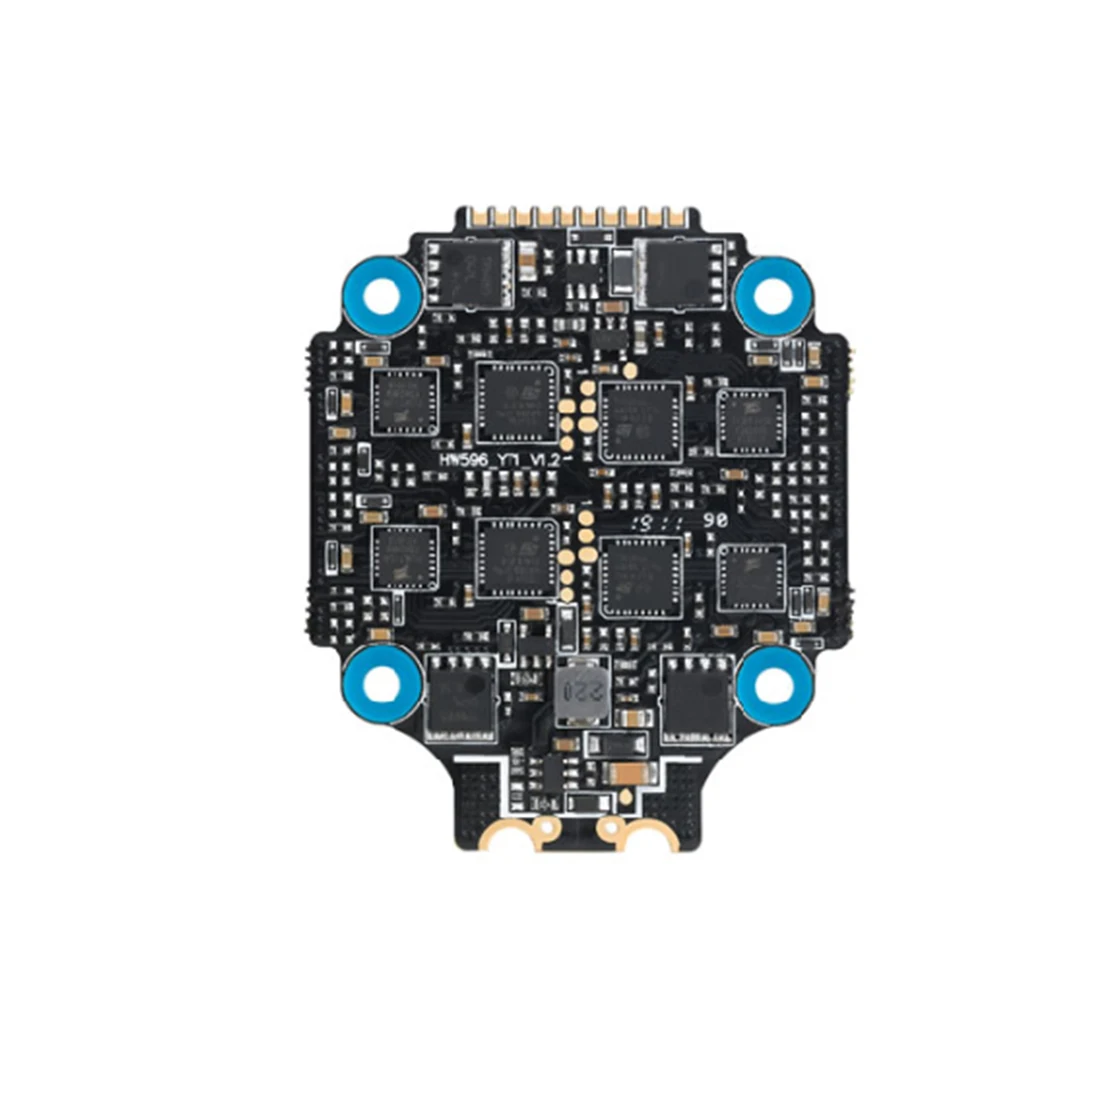 Модернизированный комбо-микроконтроллер Hobbywing XRotor F4 G2 и 60A 4в1 BLHeli32 6S ESC поддержка DShot1200 для дрона FPV